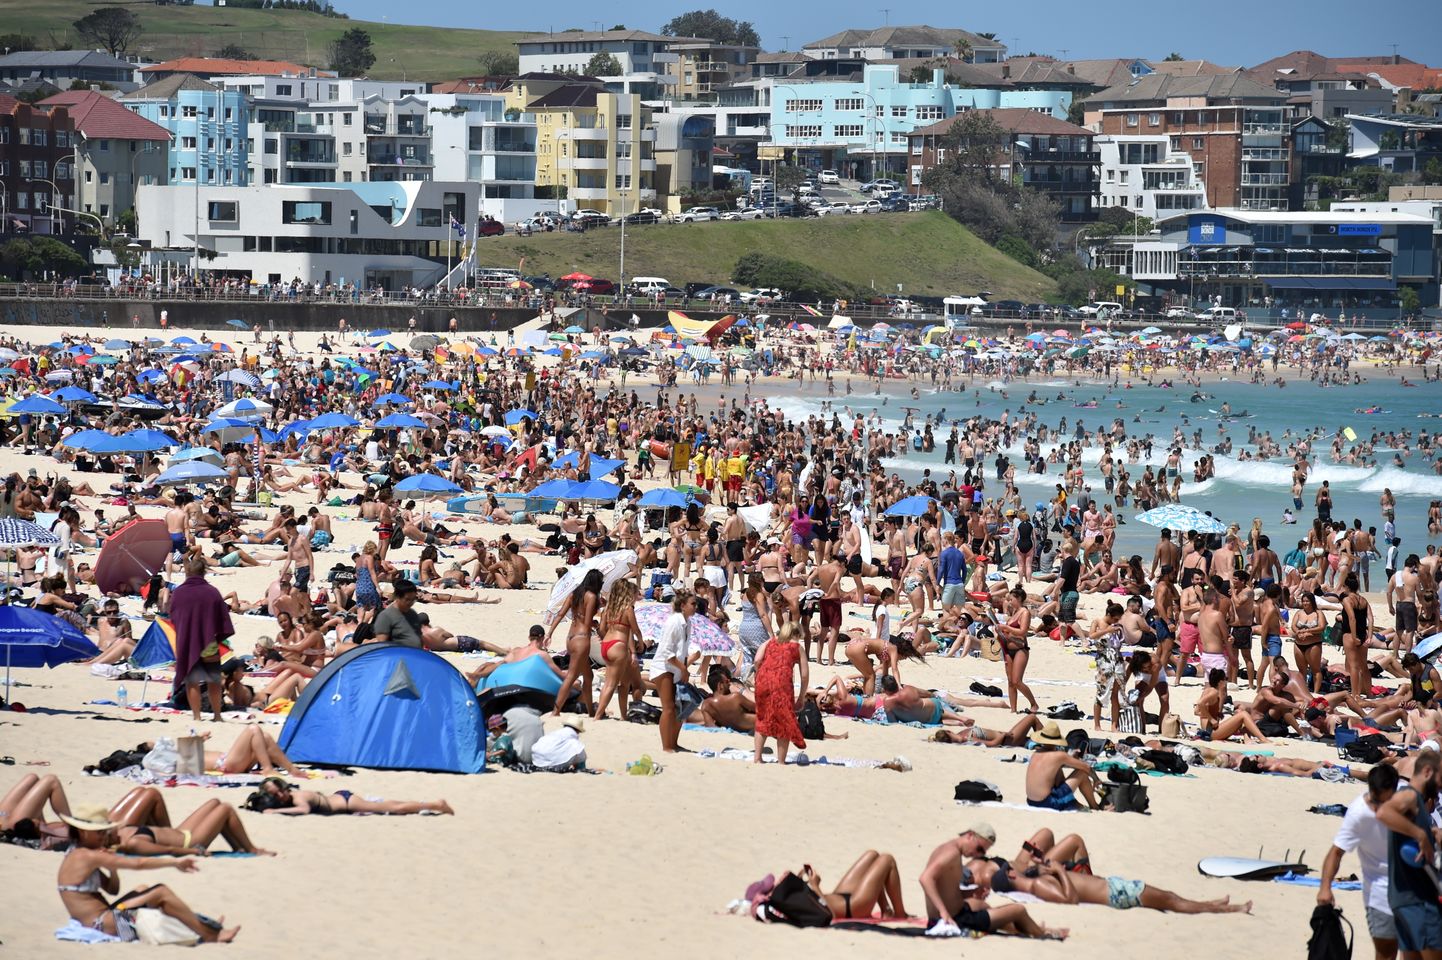 Inimesed Sydneys rannas eelmise aasta viimastel päevadel. Kui juba siis oli ebatavaliselt kuum ja temperatuur kerkis mitmel päeval kõvasti üle 30 kraadi, siis nüüd ennustatakse kohati mitut päeva järjest üle 45 kraadi tõusva temepartuuriga.